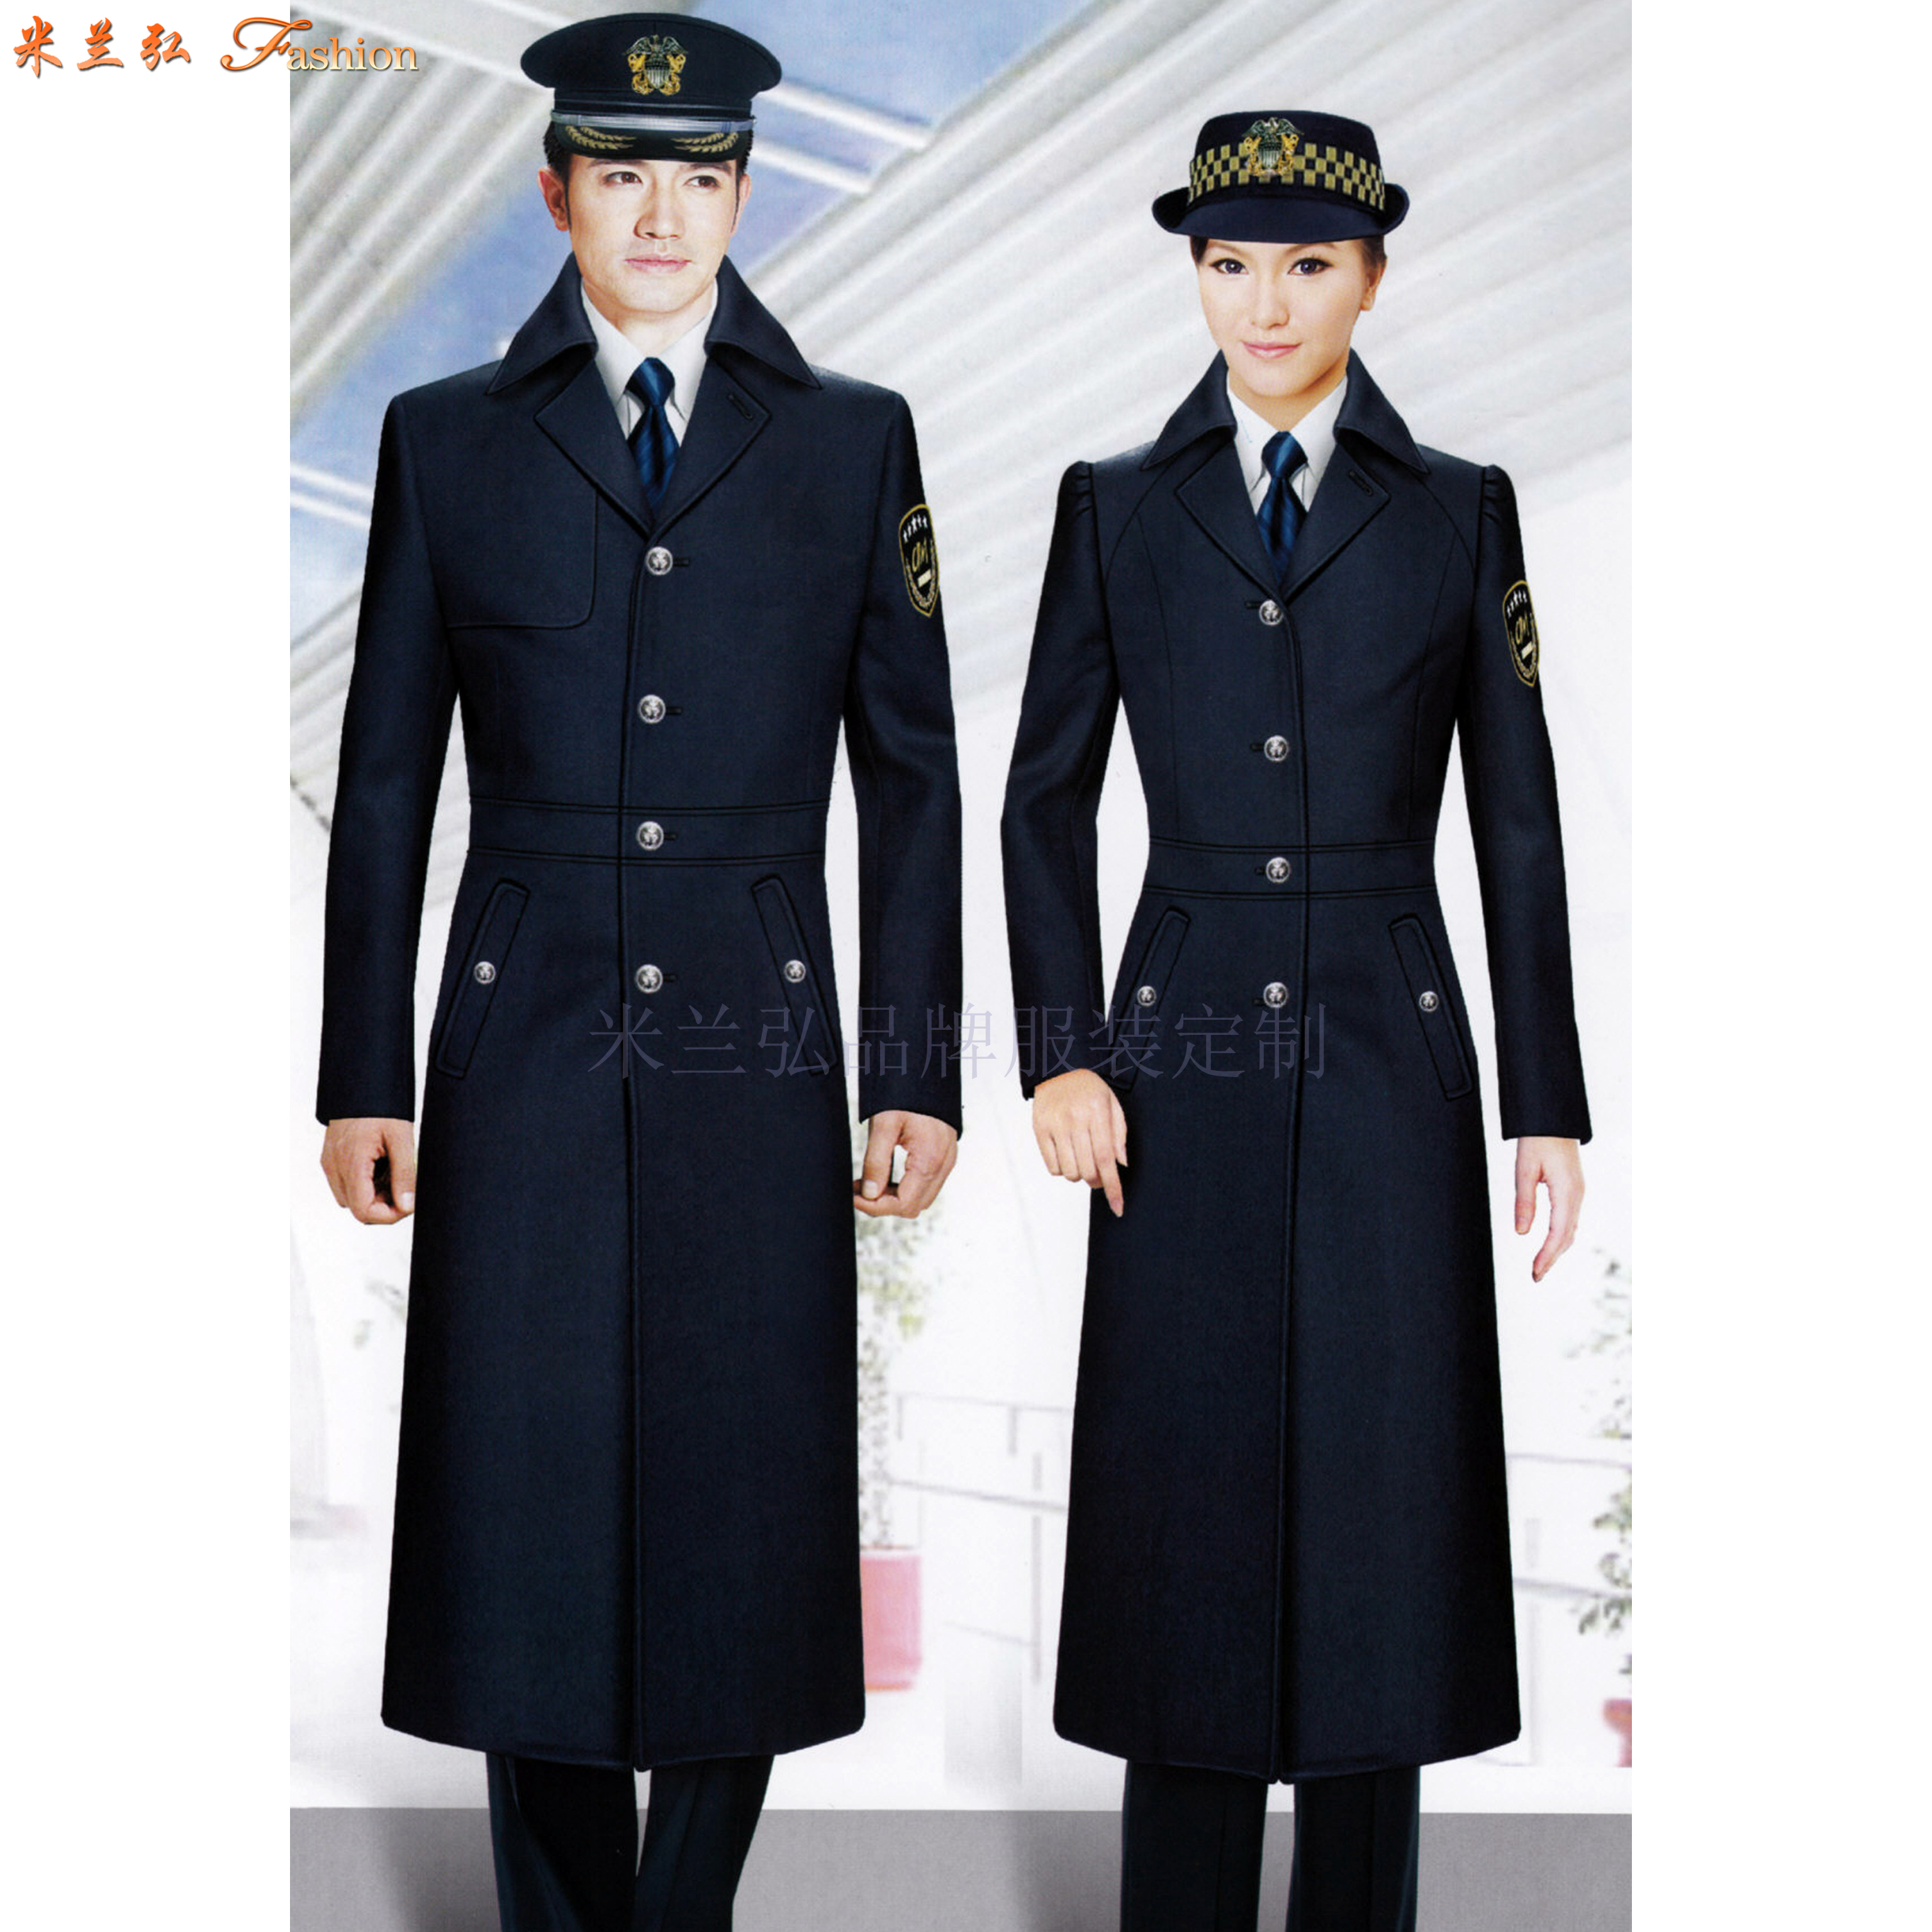 「高铁大衣」量体定做高铁乘务员男女保暖羊毛大衣-米兰弘服装-1